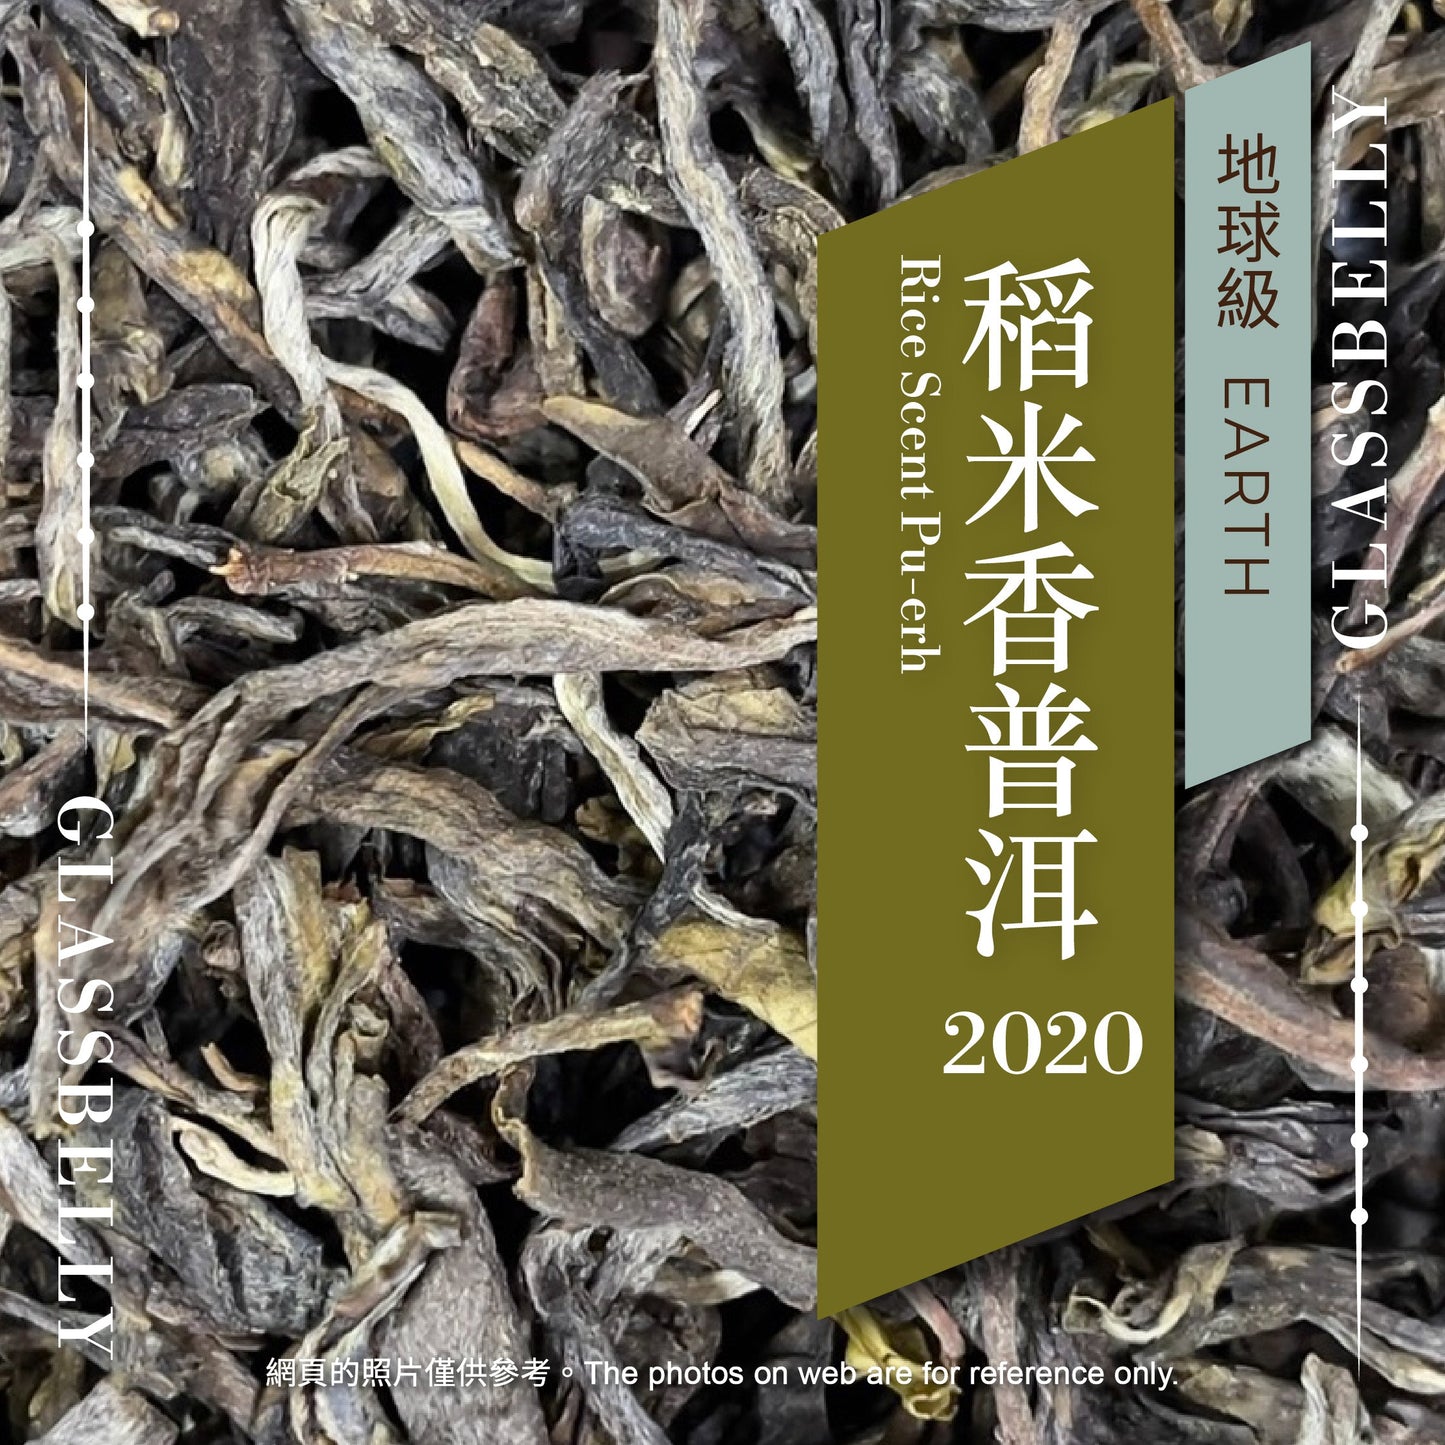 25g 稻米香生普洱 2020 Rice Scent Raw Pu-erh